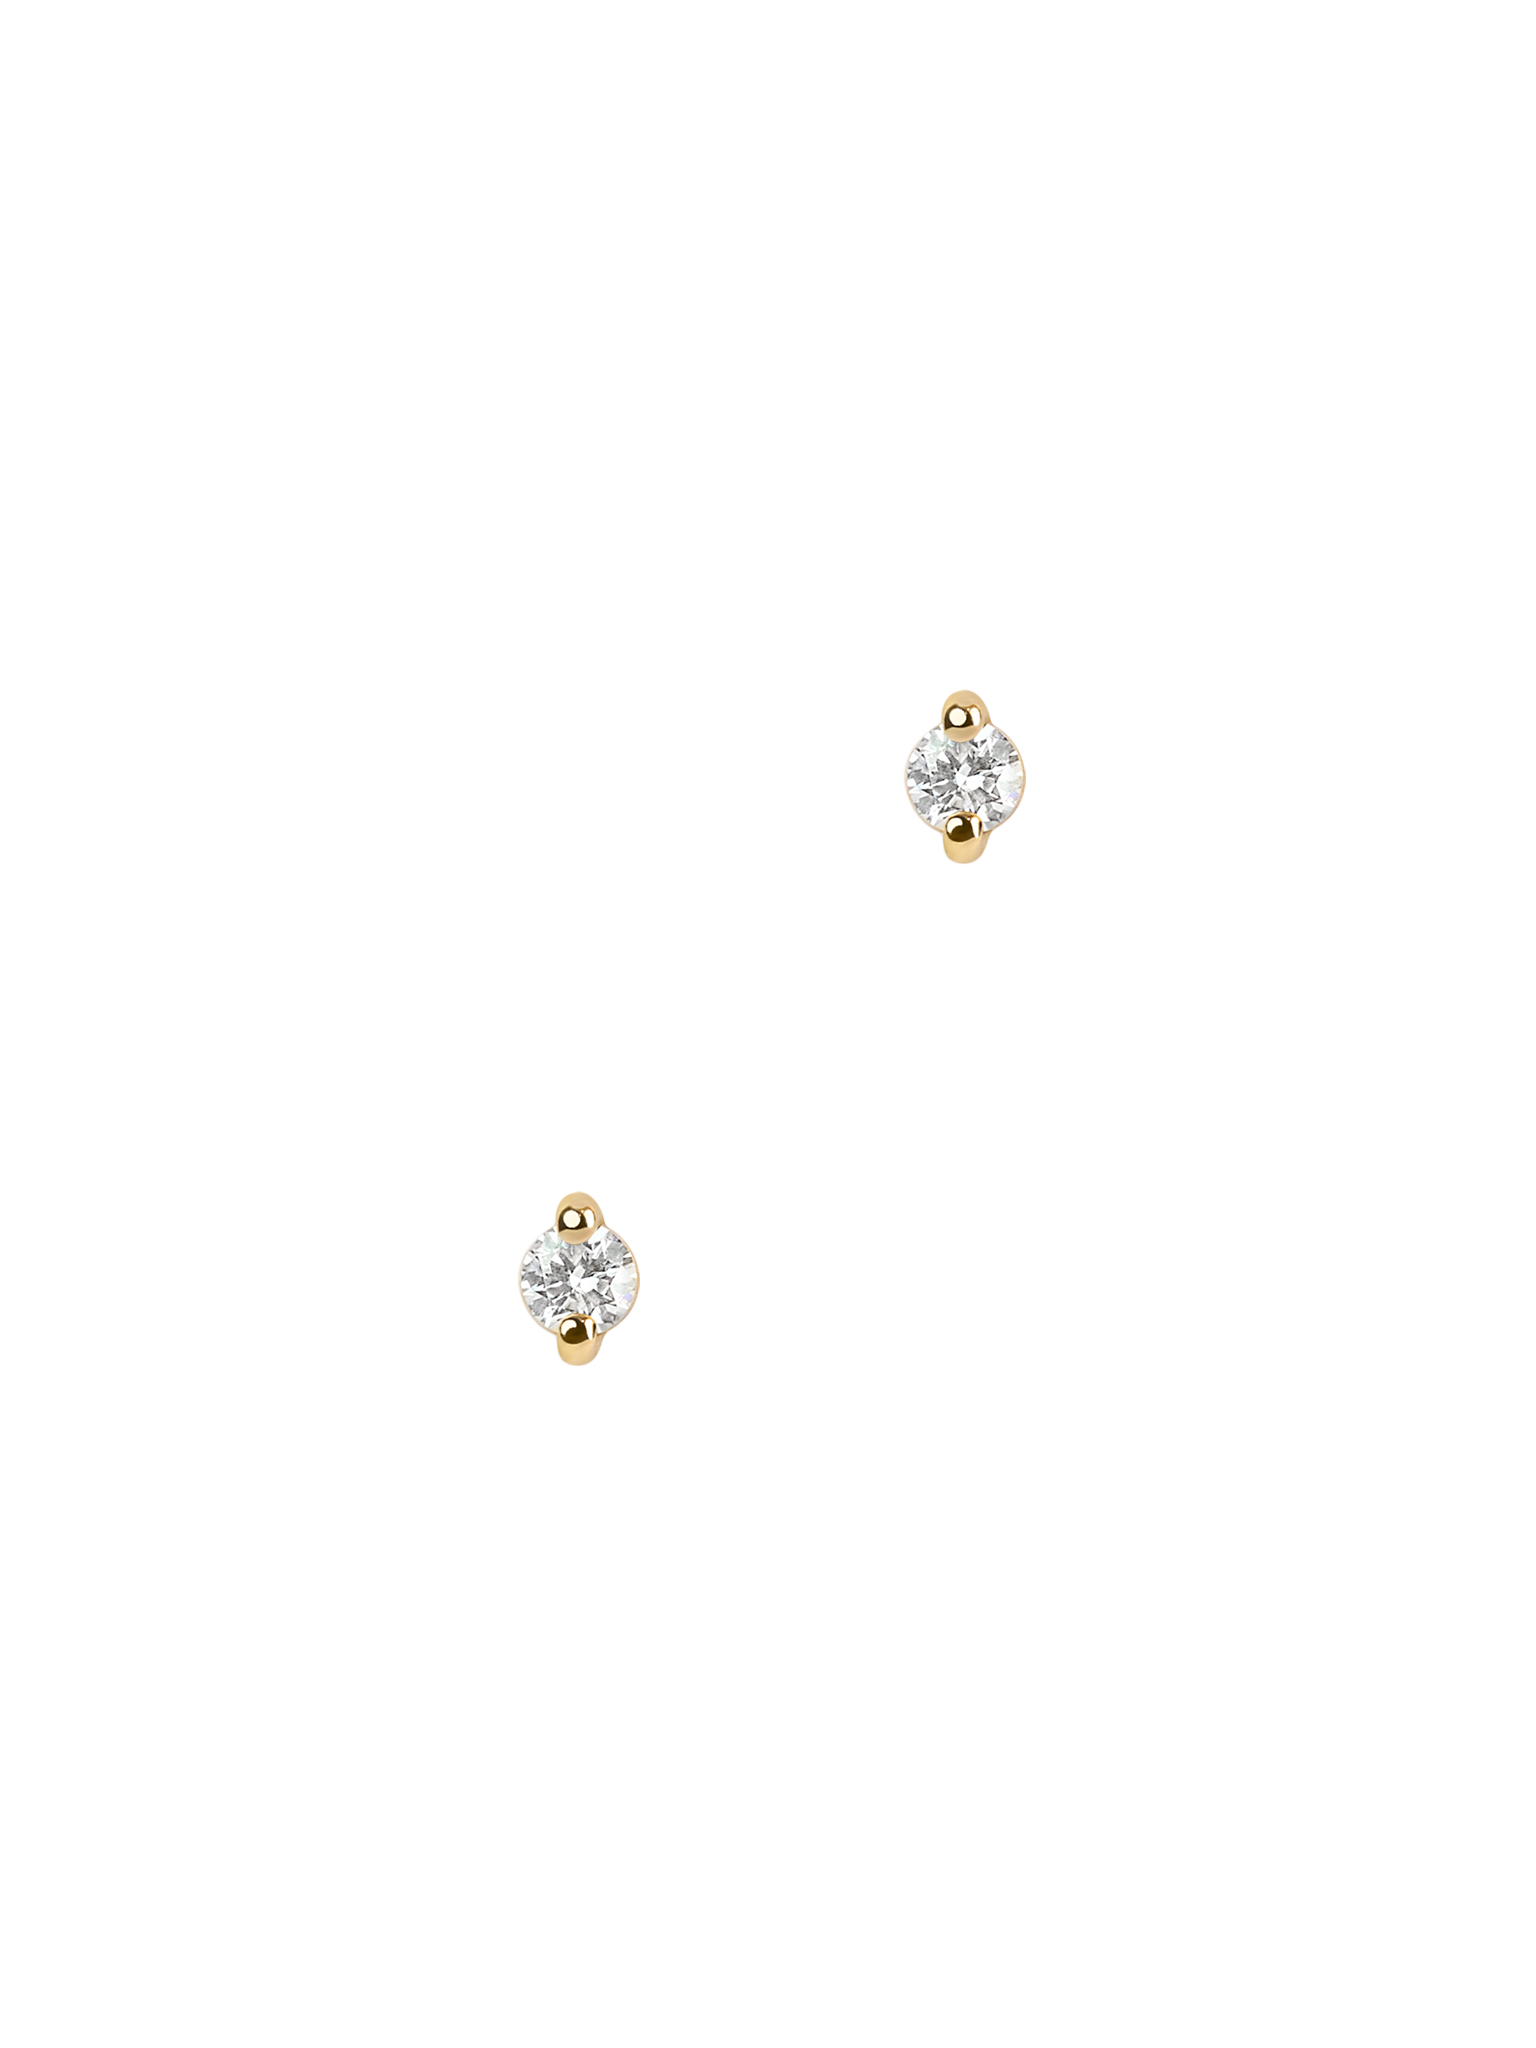 Diamond pinch flat back stud earring, 2mm